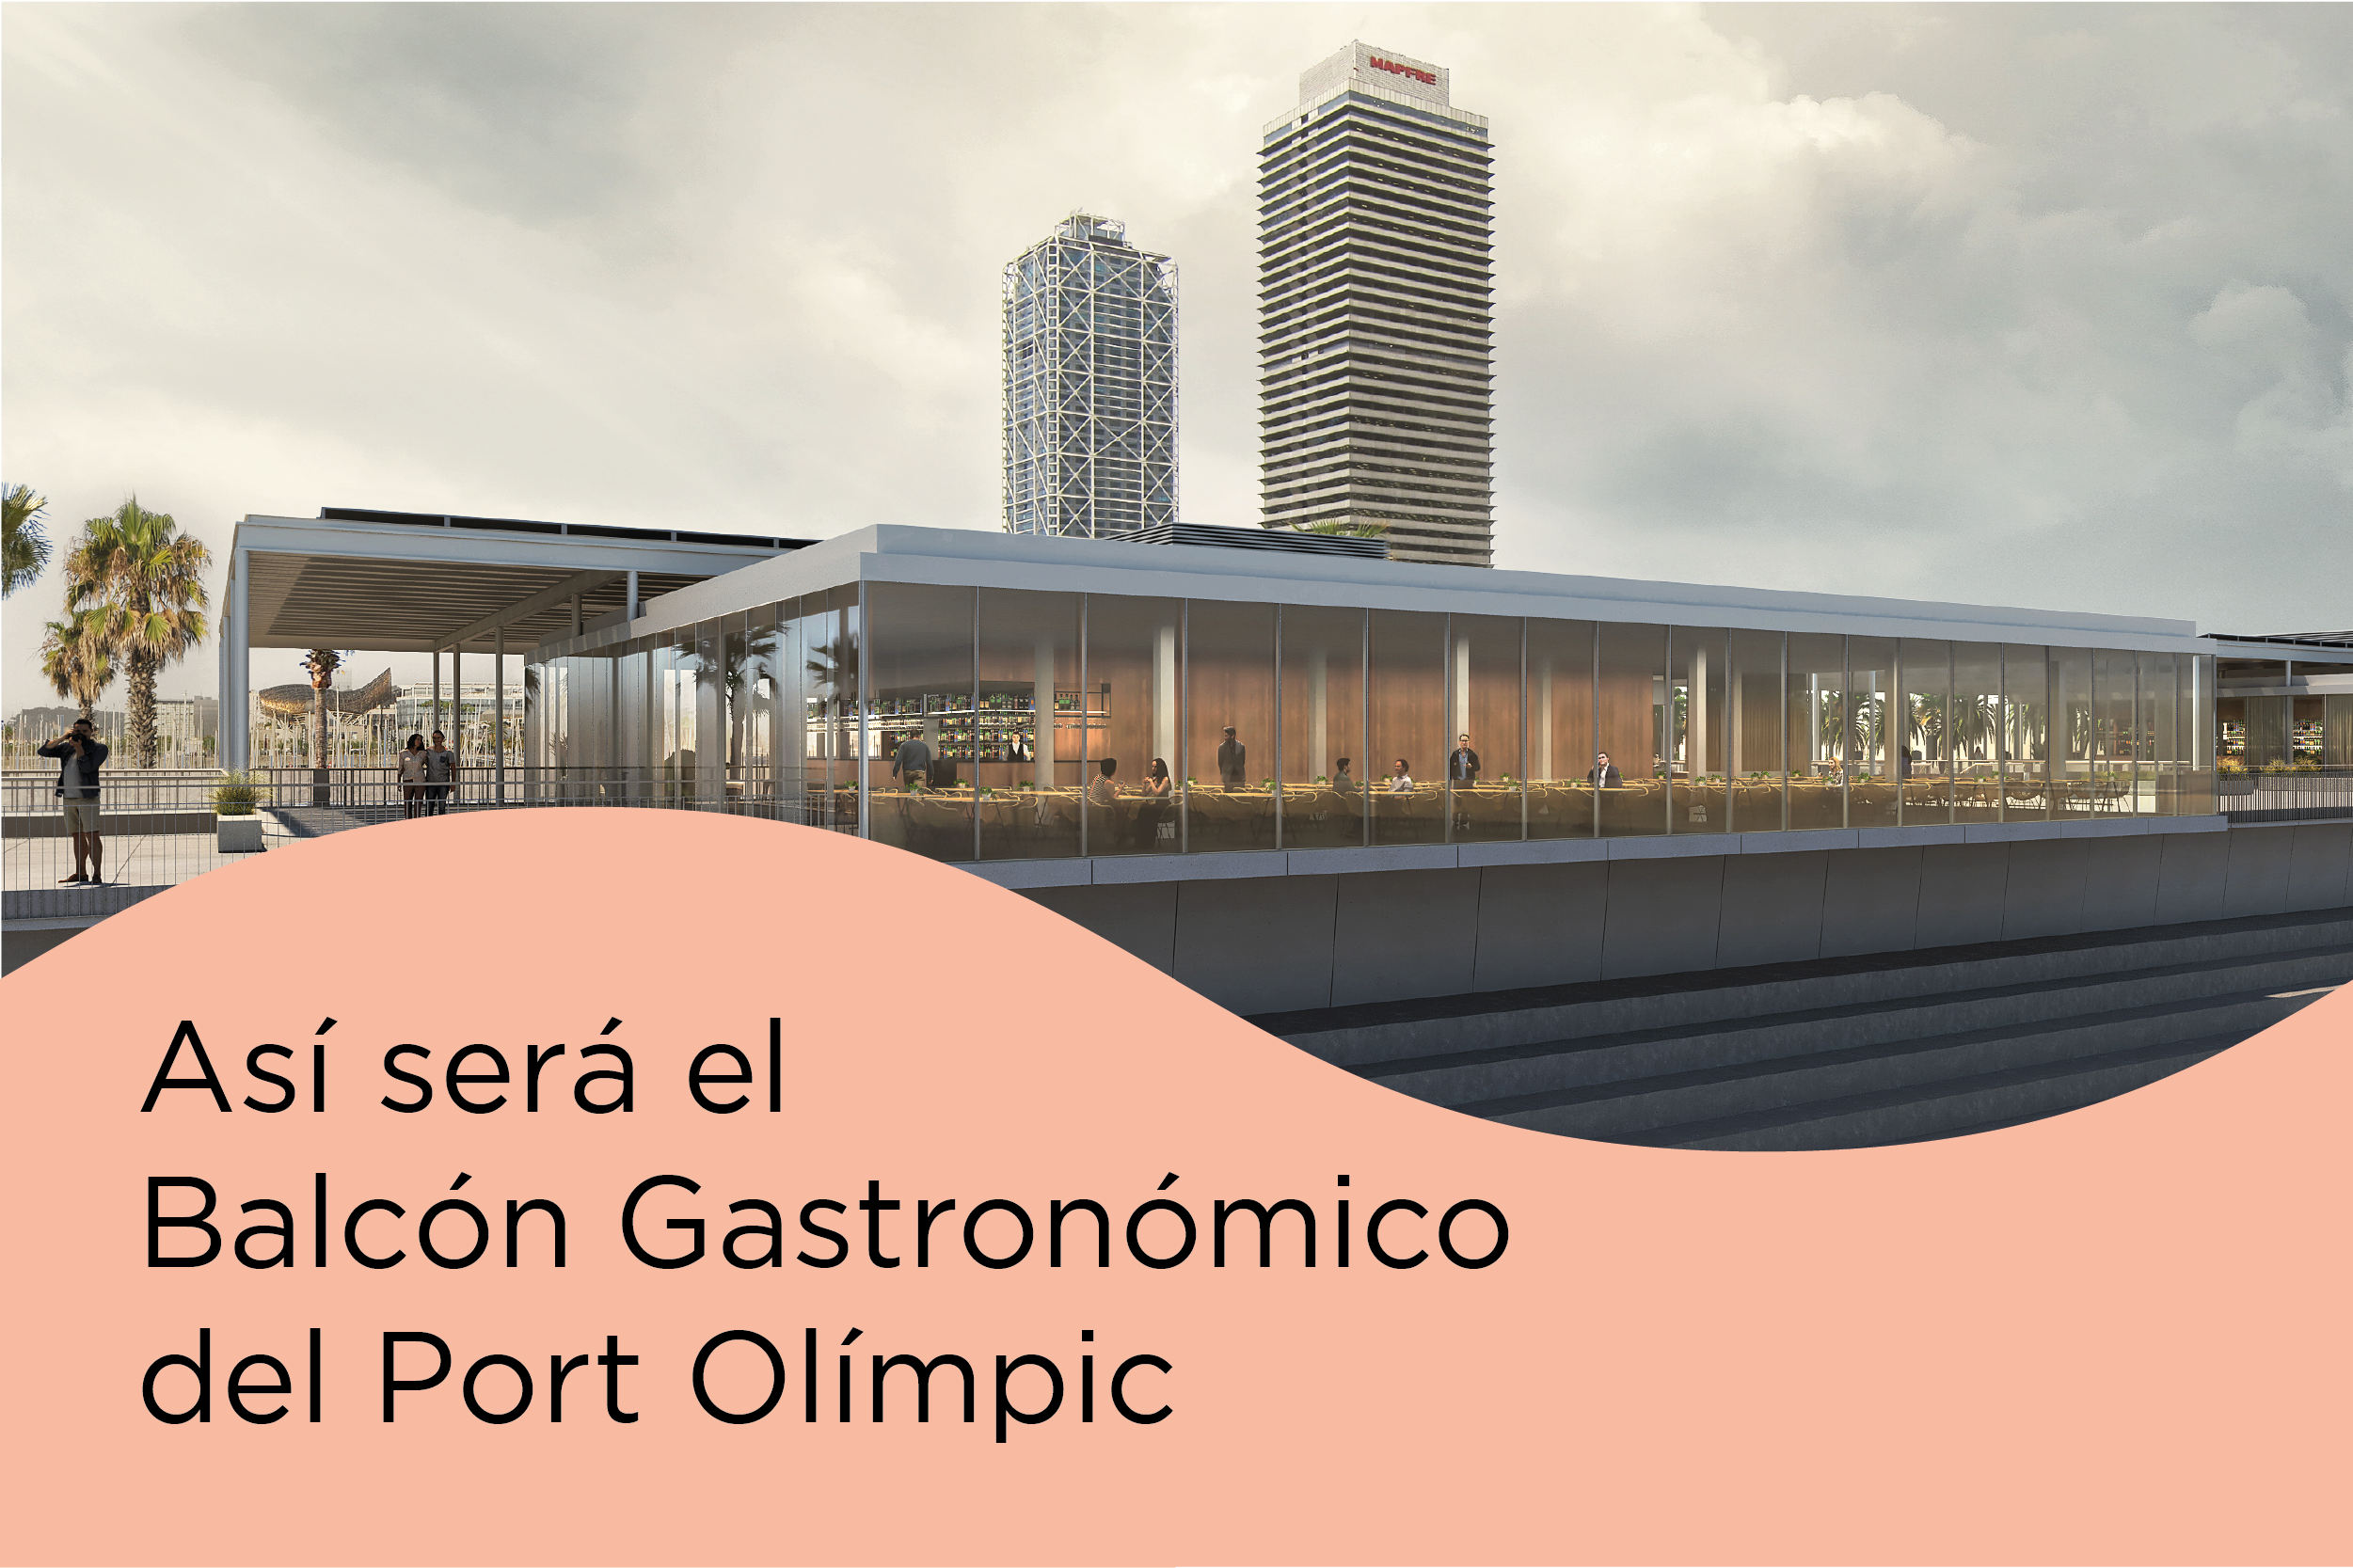 El Balcón Gastronómico del puerto olímpico